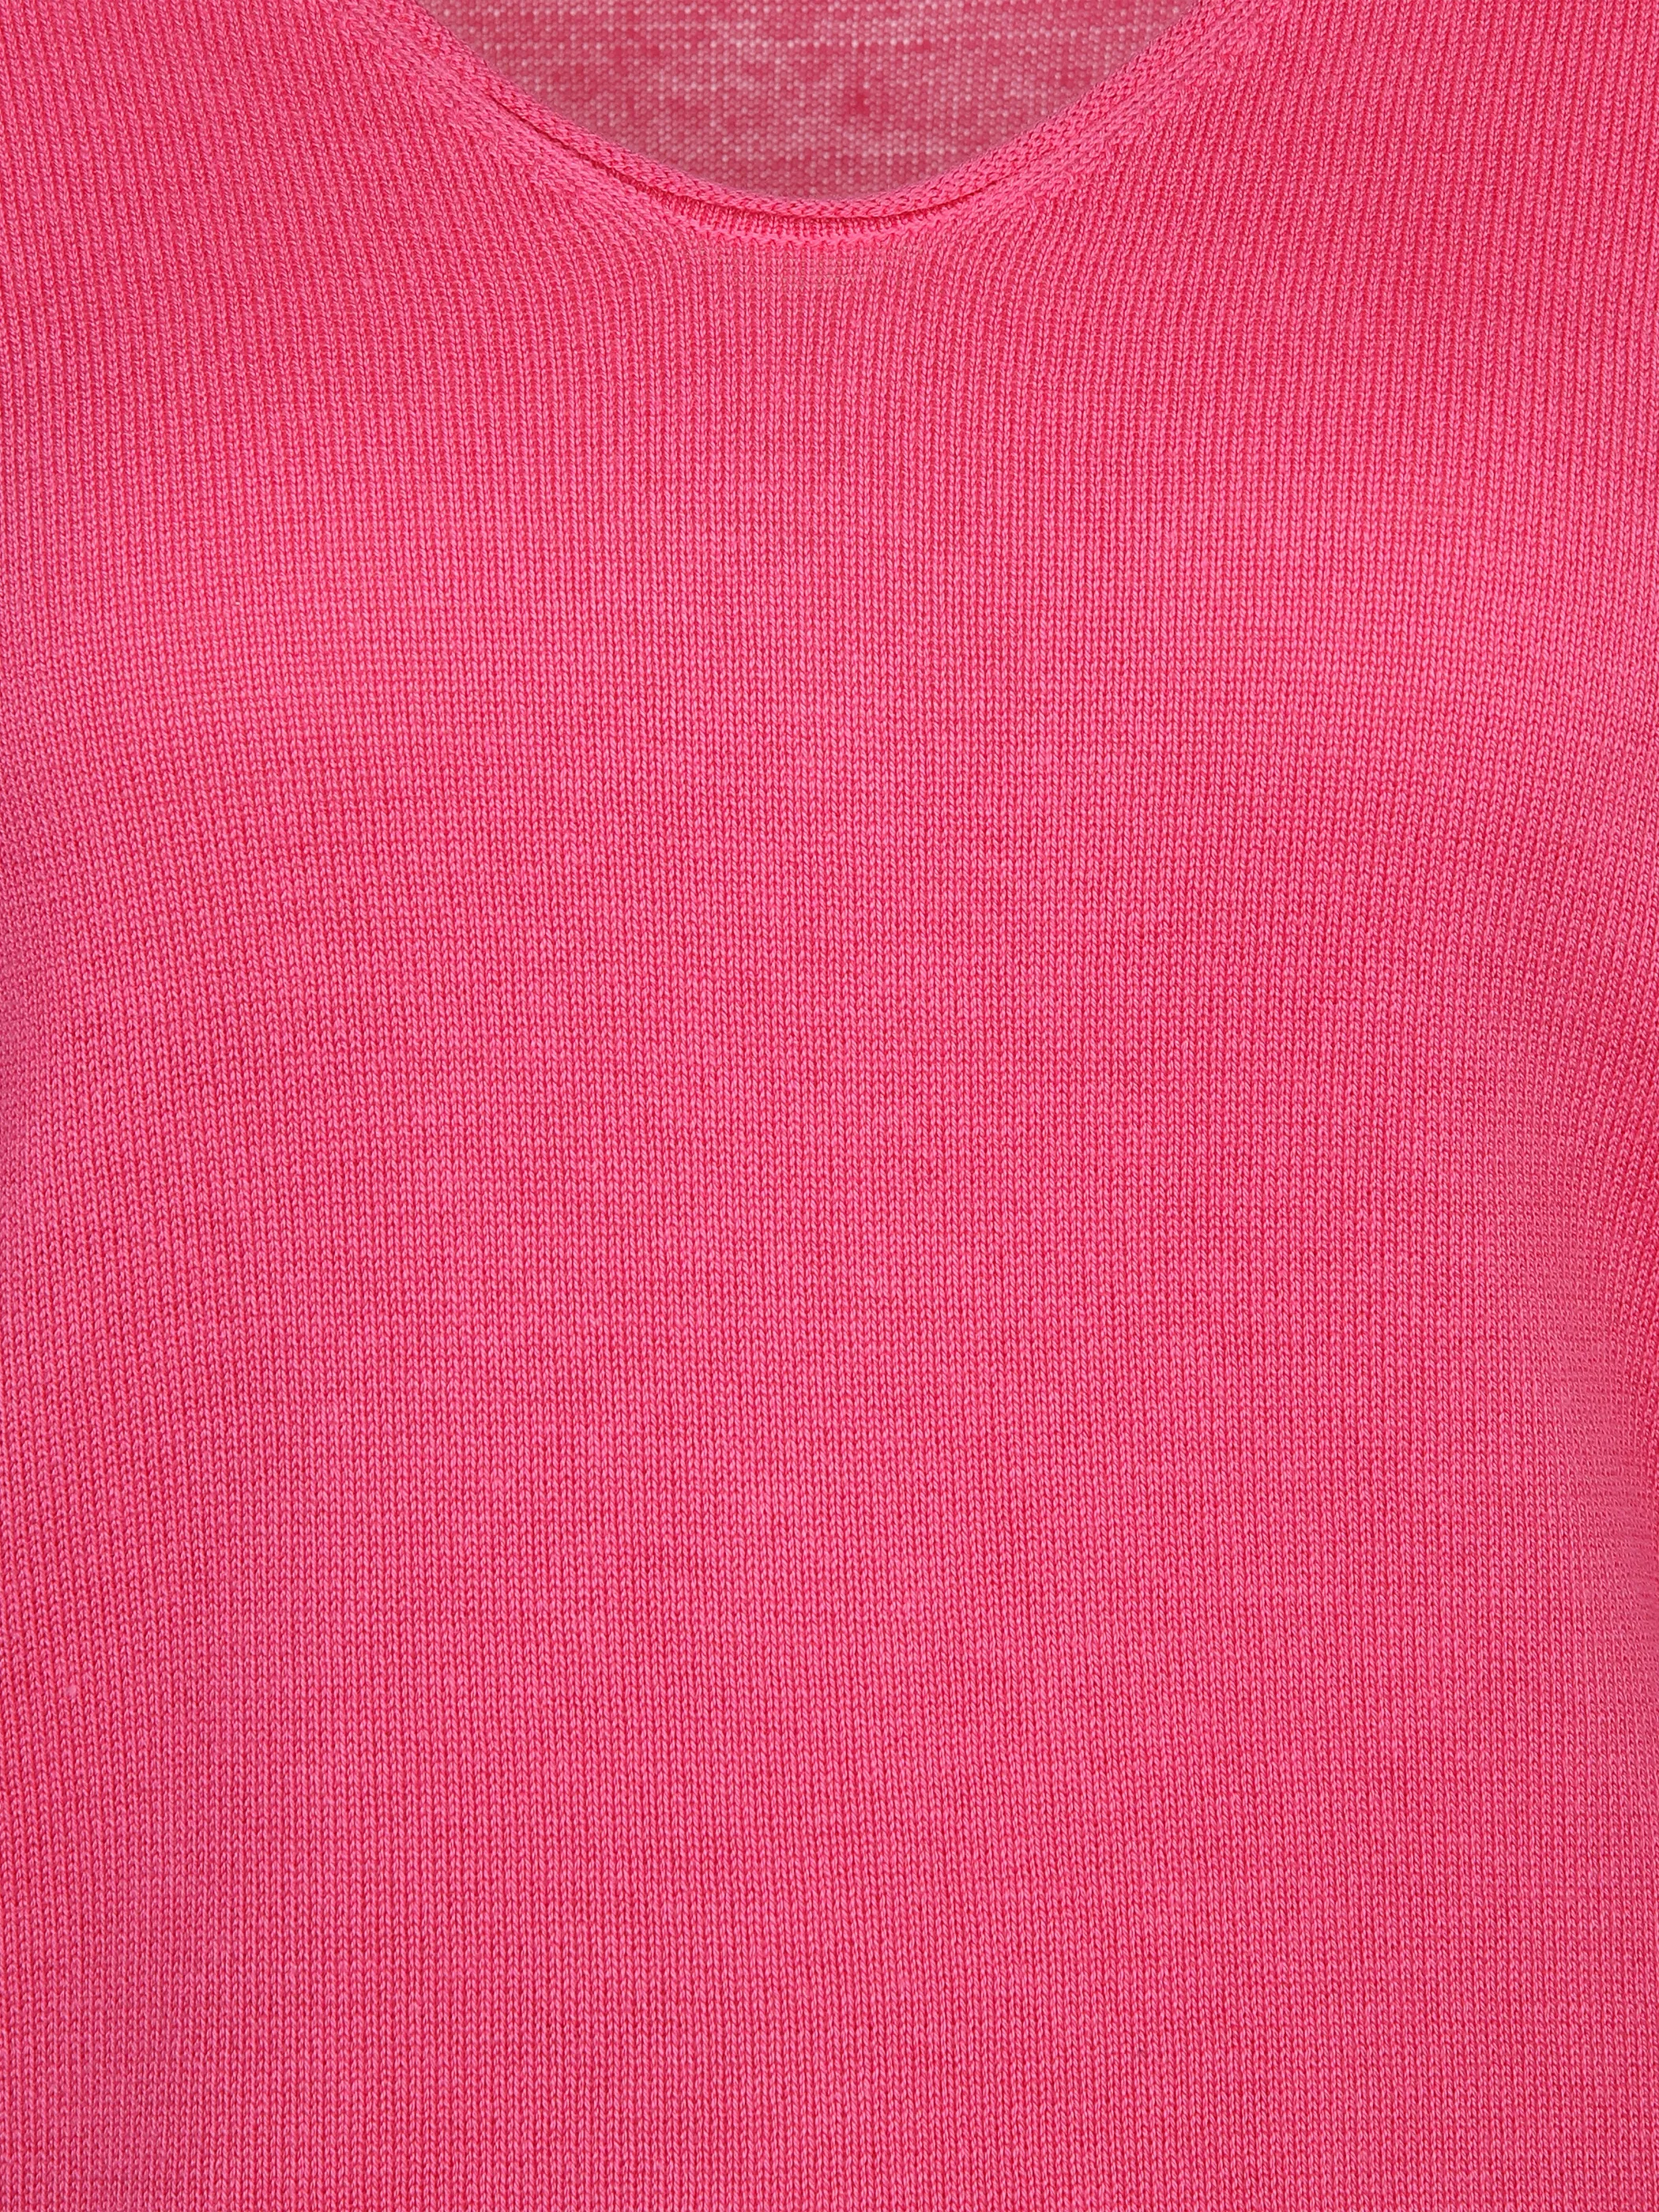 Tom Tailor 1012976 NOS sweater basic v-neck Pink 824304 15799 3